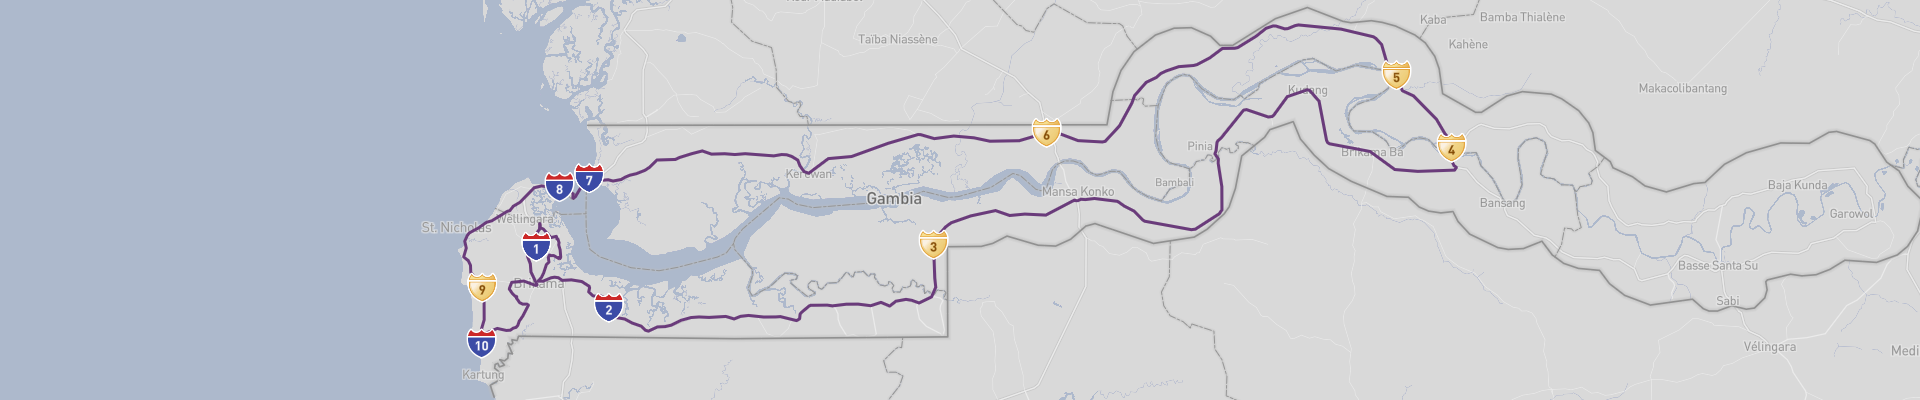 Itirinario Gambia 